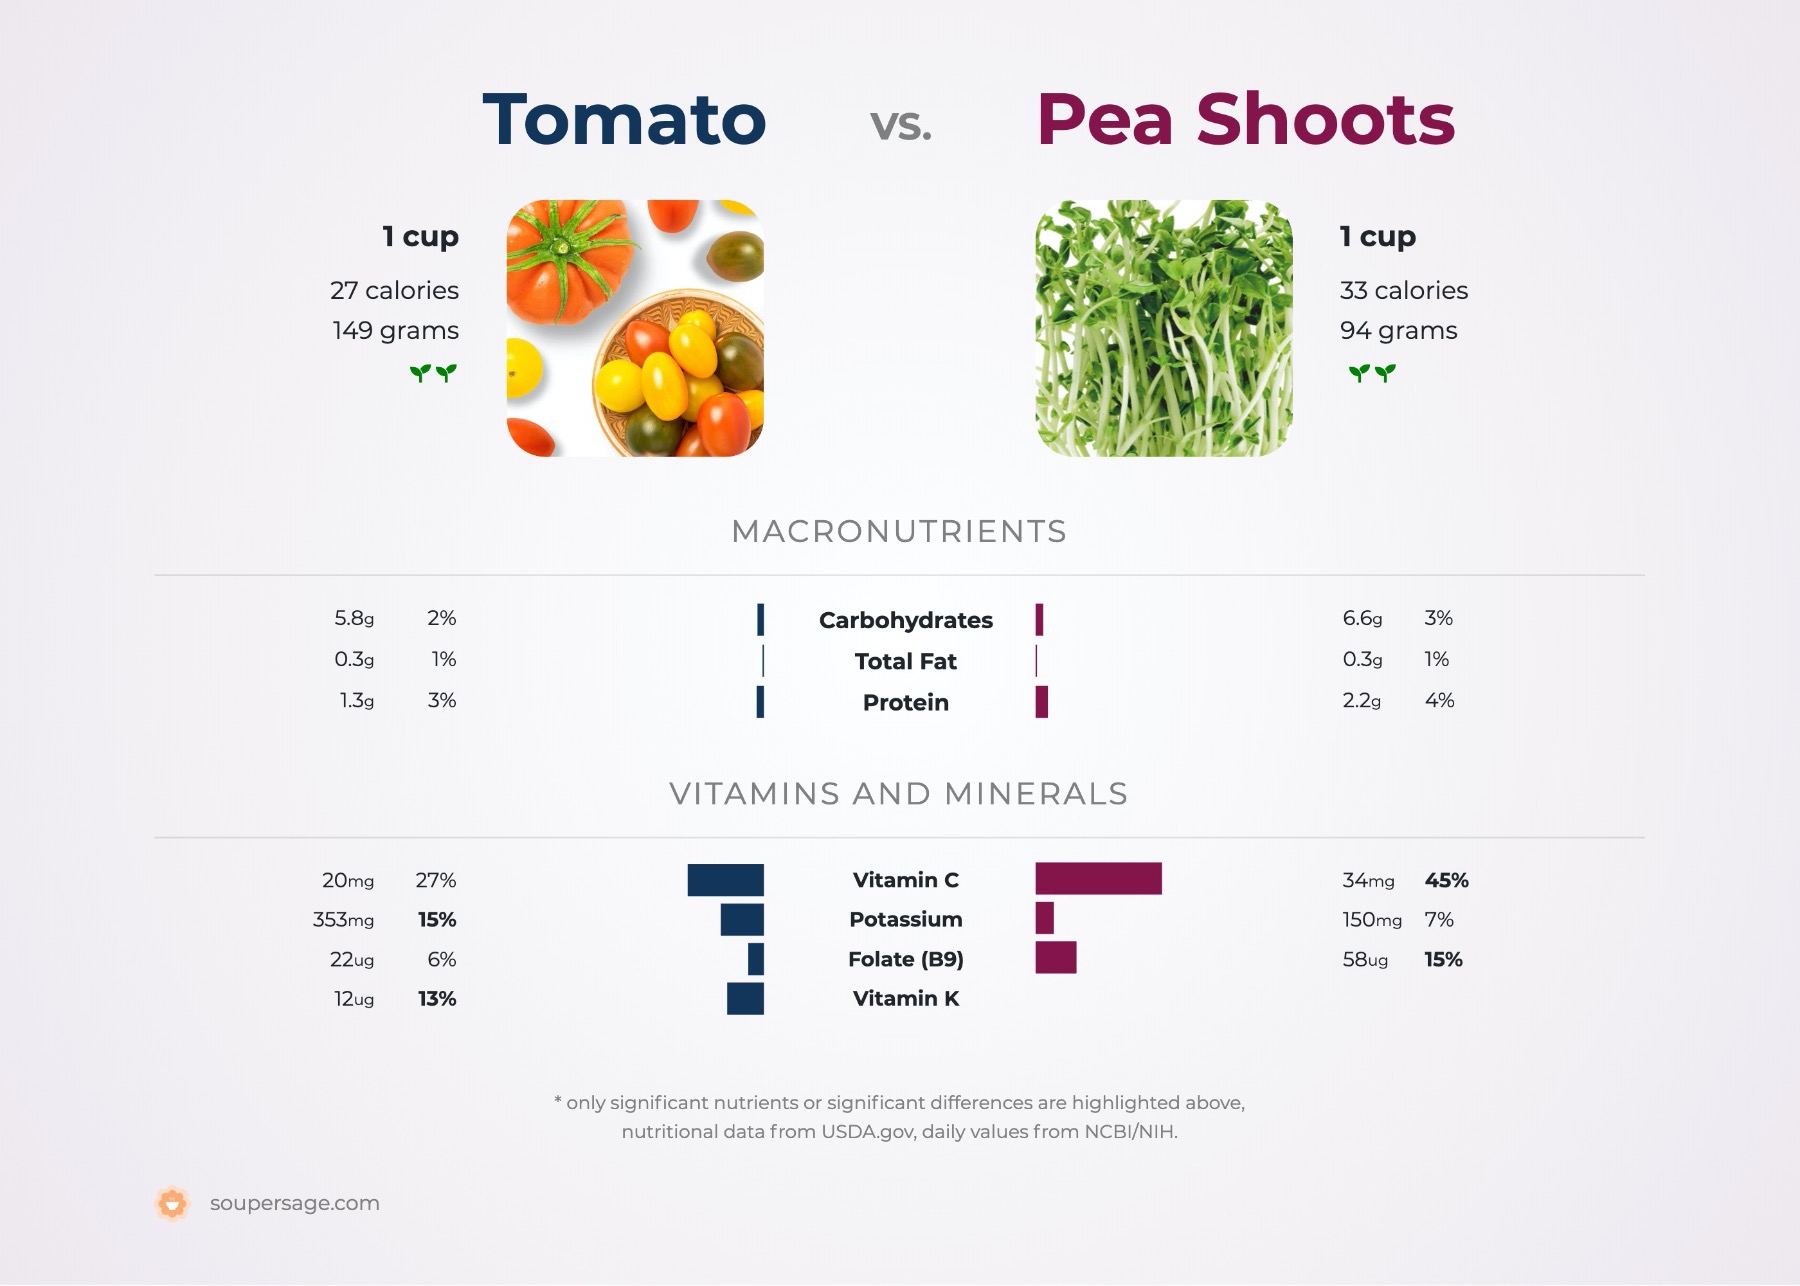 nutrition comparison of pea shoots vs. tomato